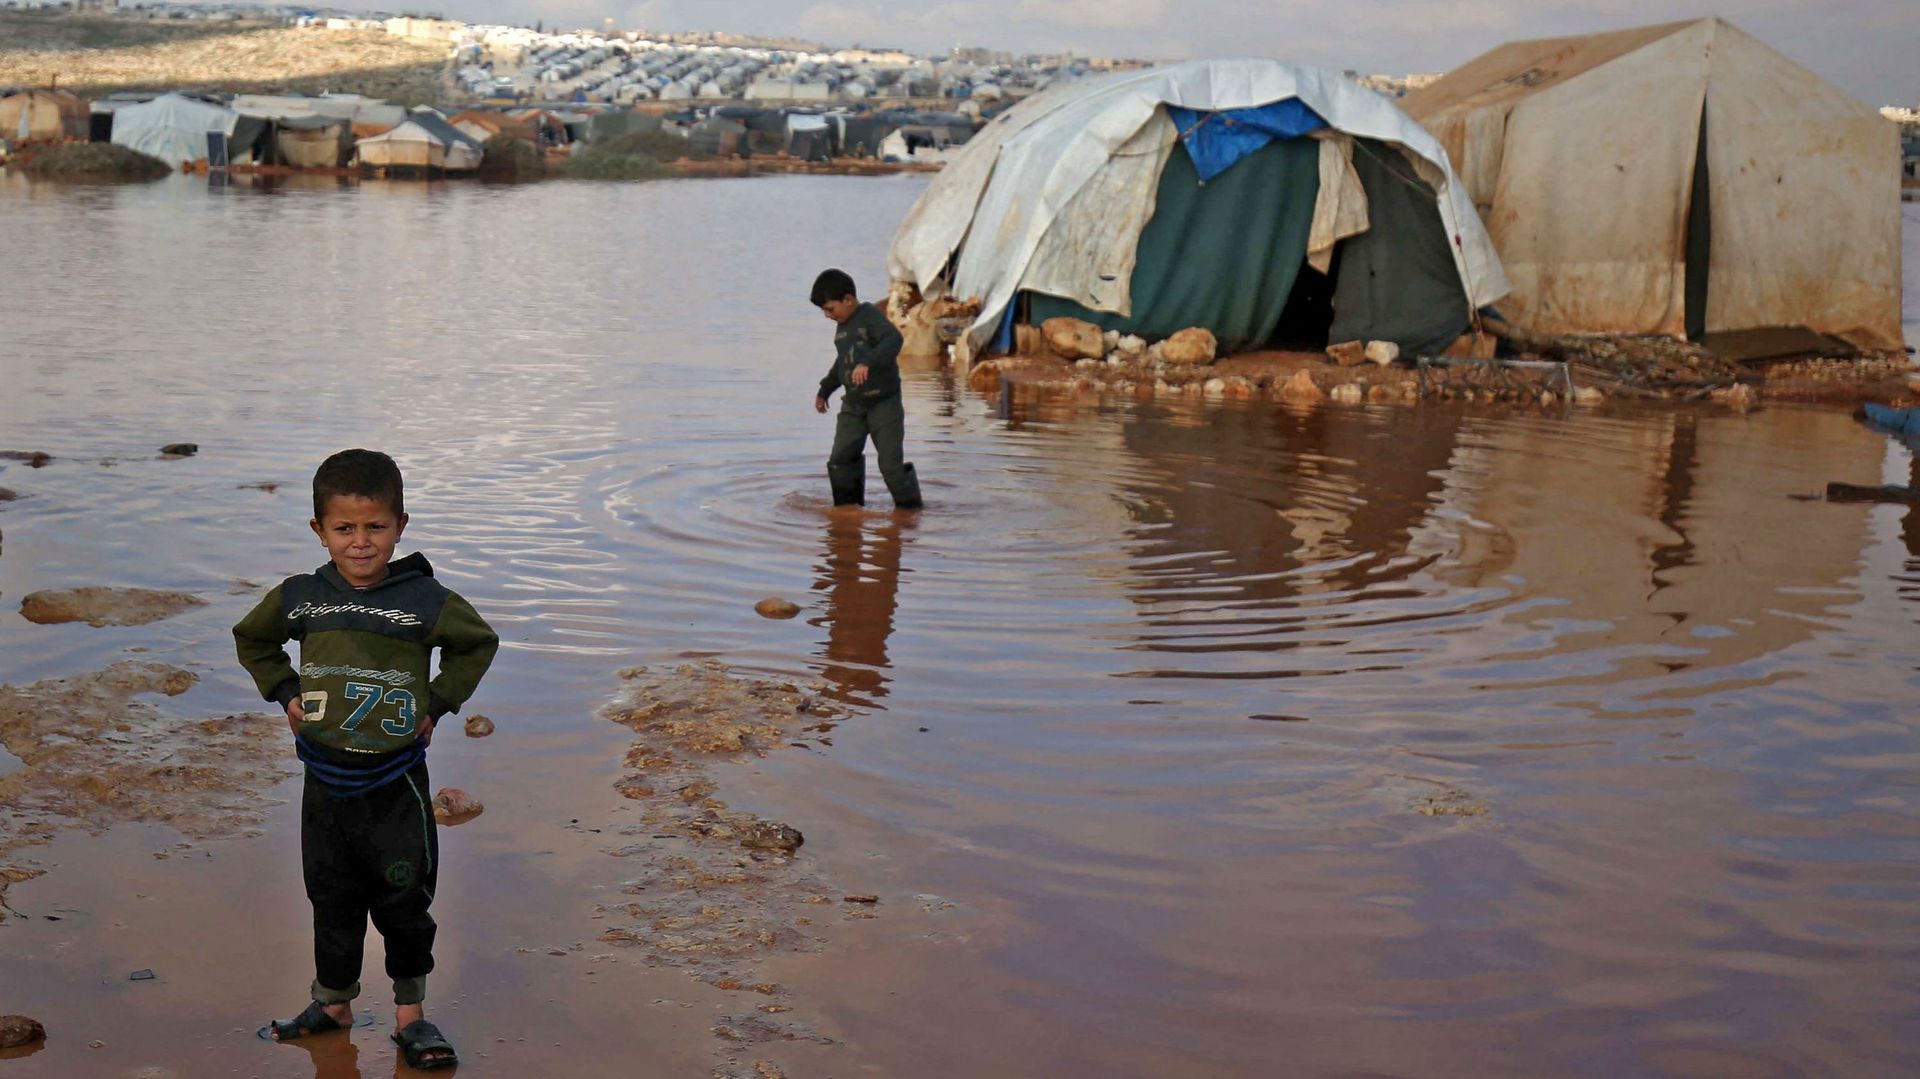 Un camp de déplacés dans la province d’Idleb, le 19 janvier 2021. Joël Ghazi : "chaque année, c’est la même chose : leurs tentes sont prises par l’eau, parce que ce n’est pas une zone adaptée pour recevoir 3 millions de personnes".